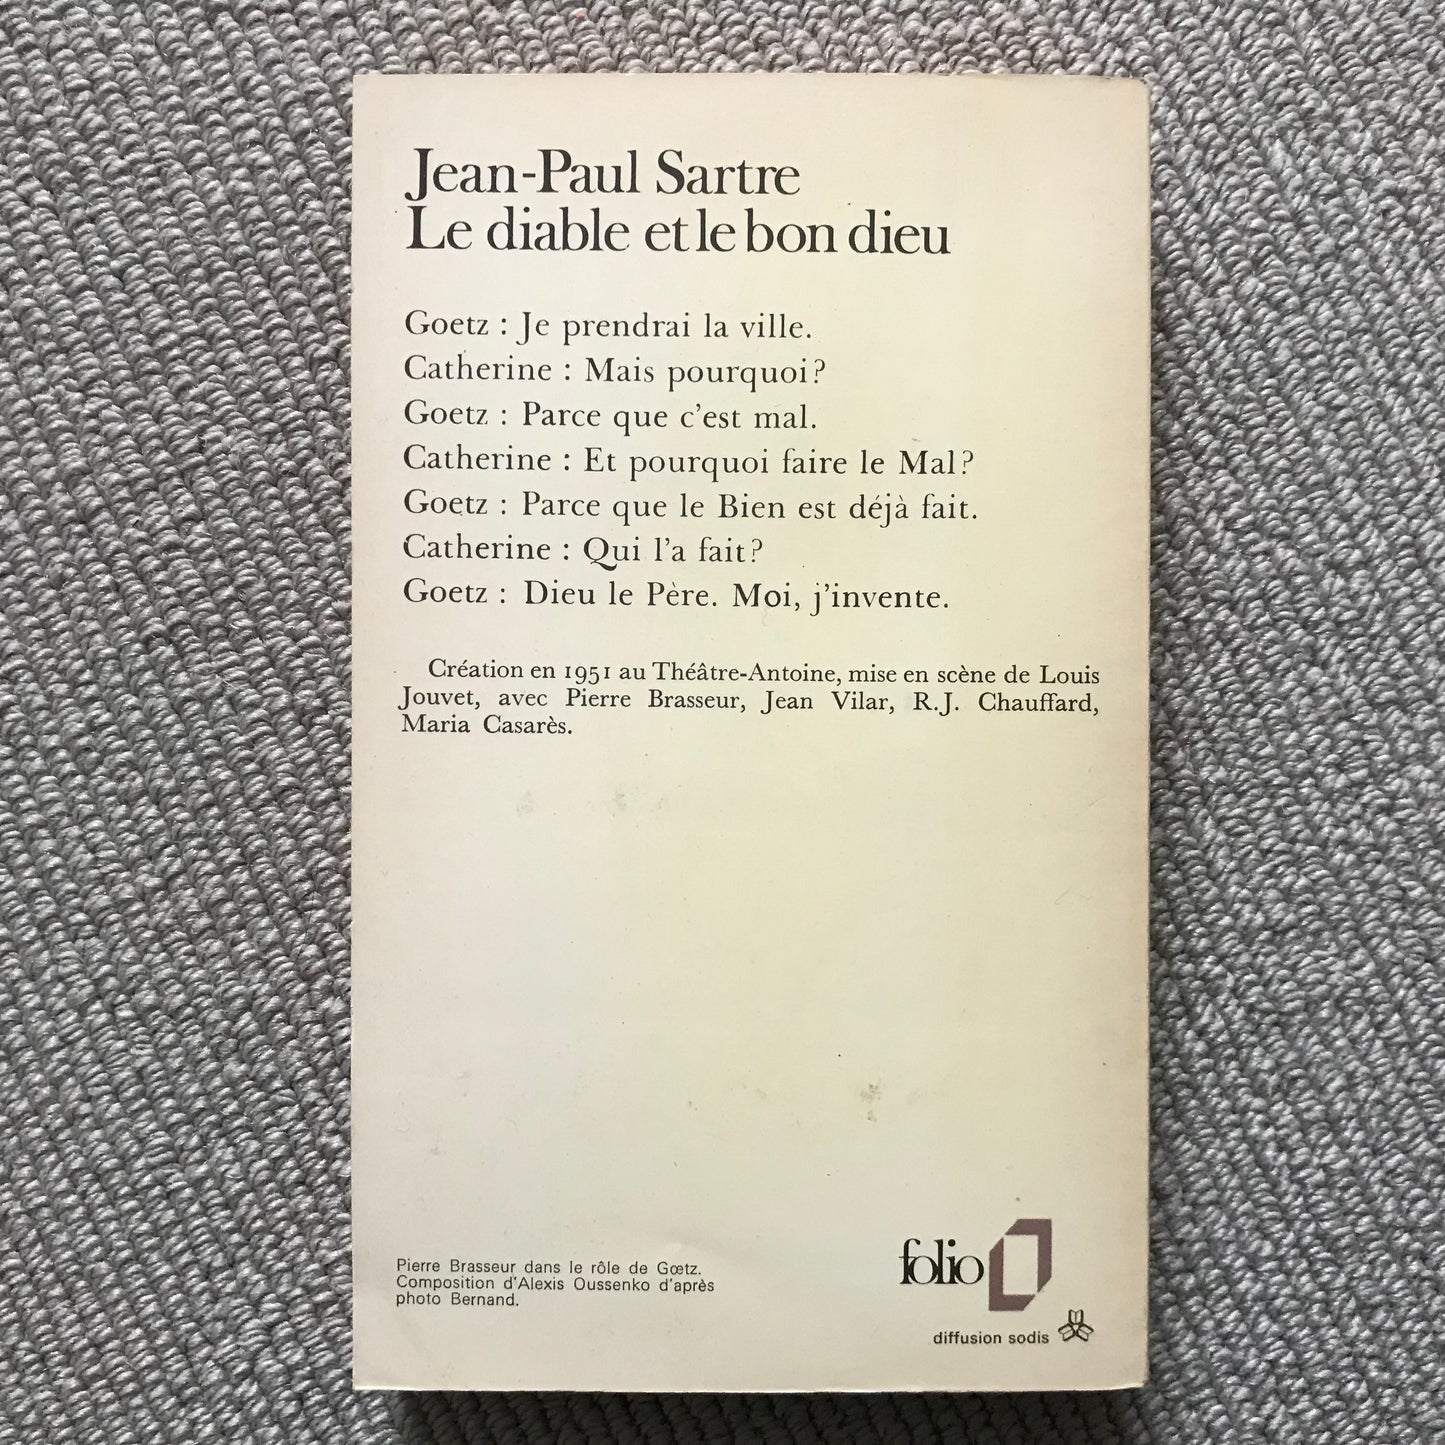 Sartre, Jean-Paul - Le diable et le bon dieu